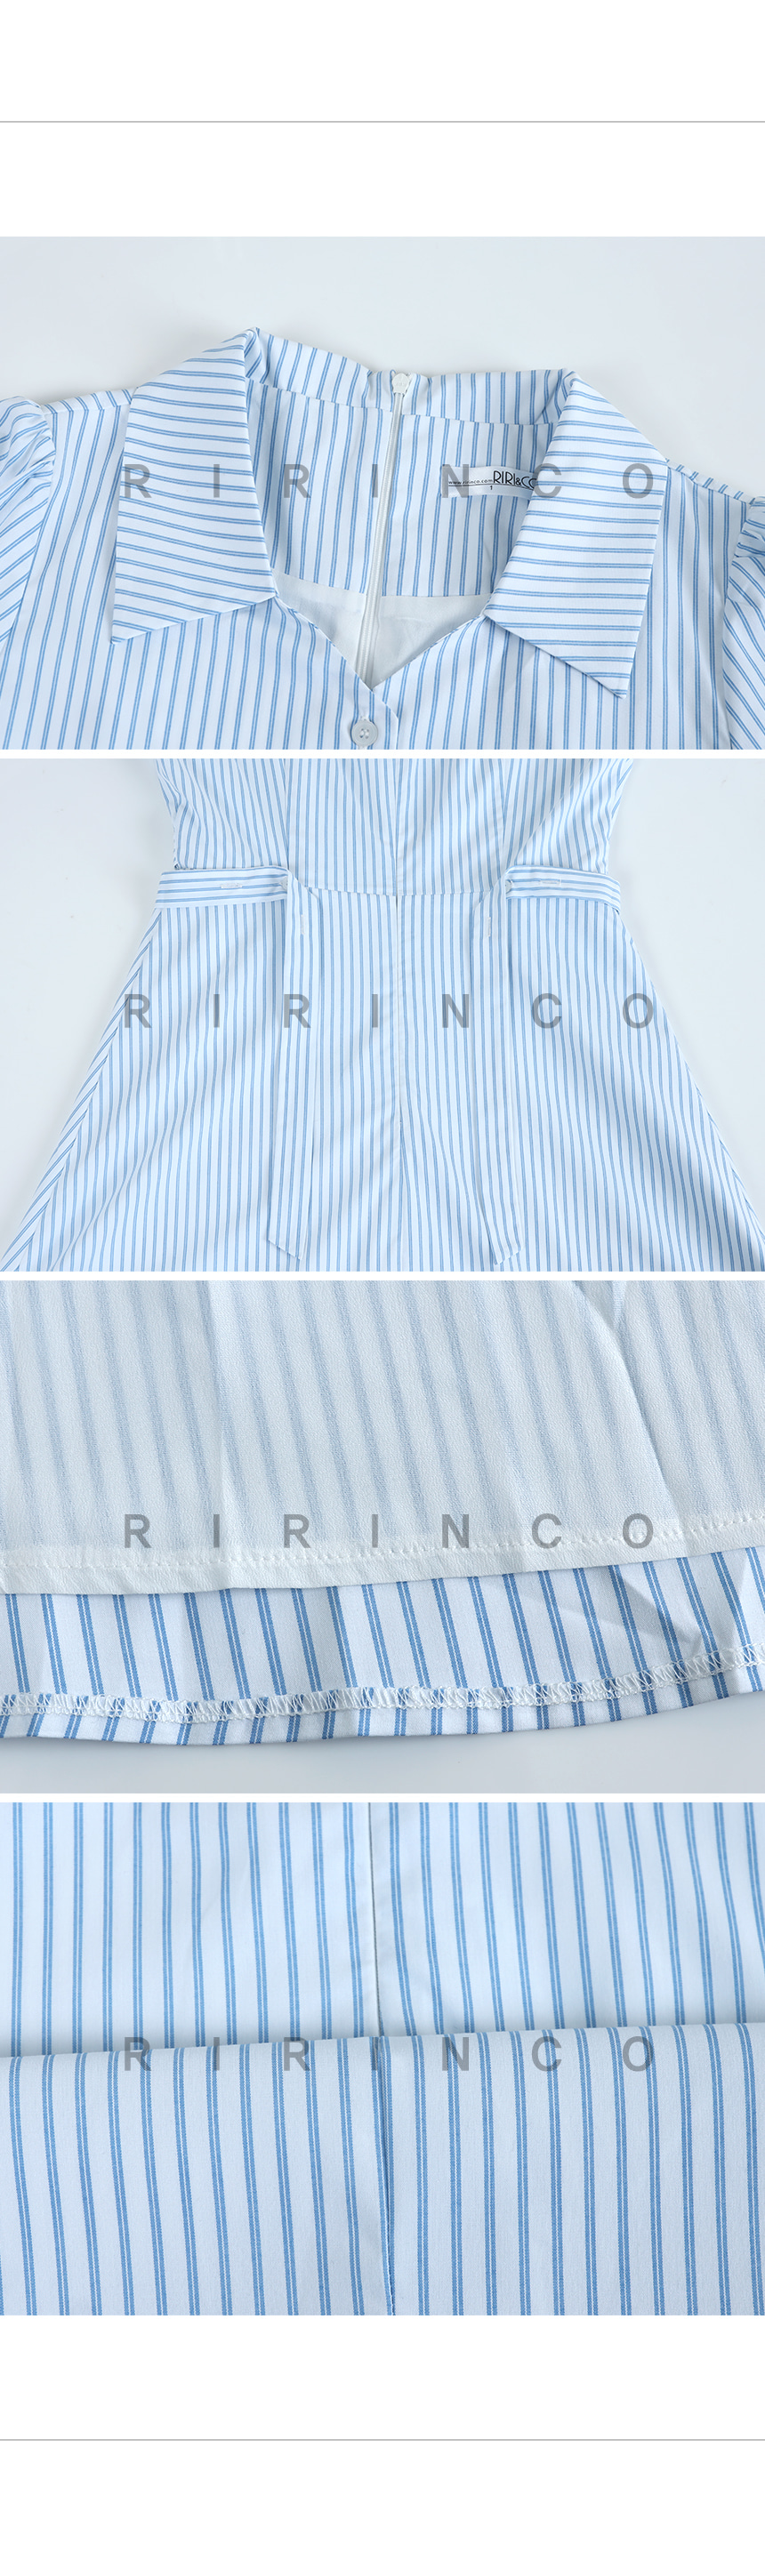 RIRINCO ストライプオープンカラー半袖ロングワンピース